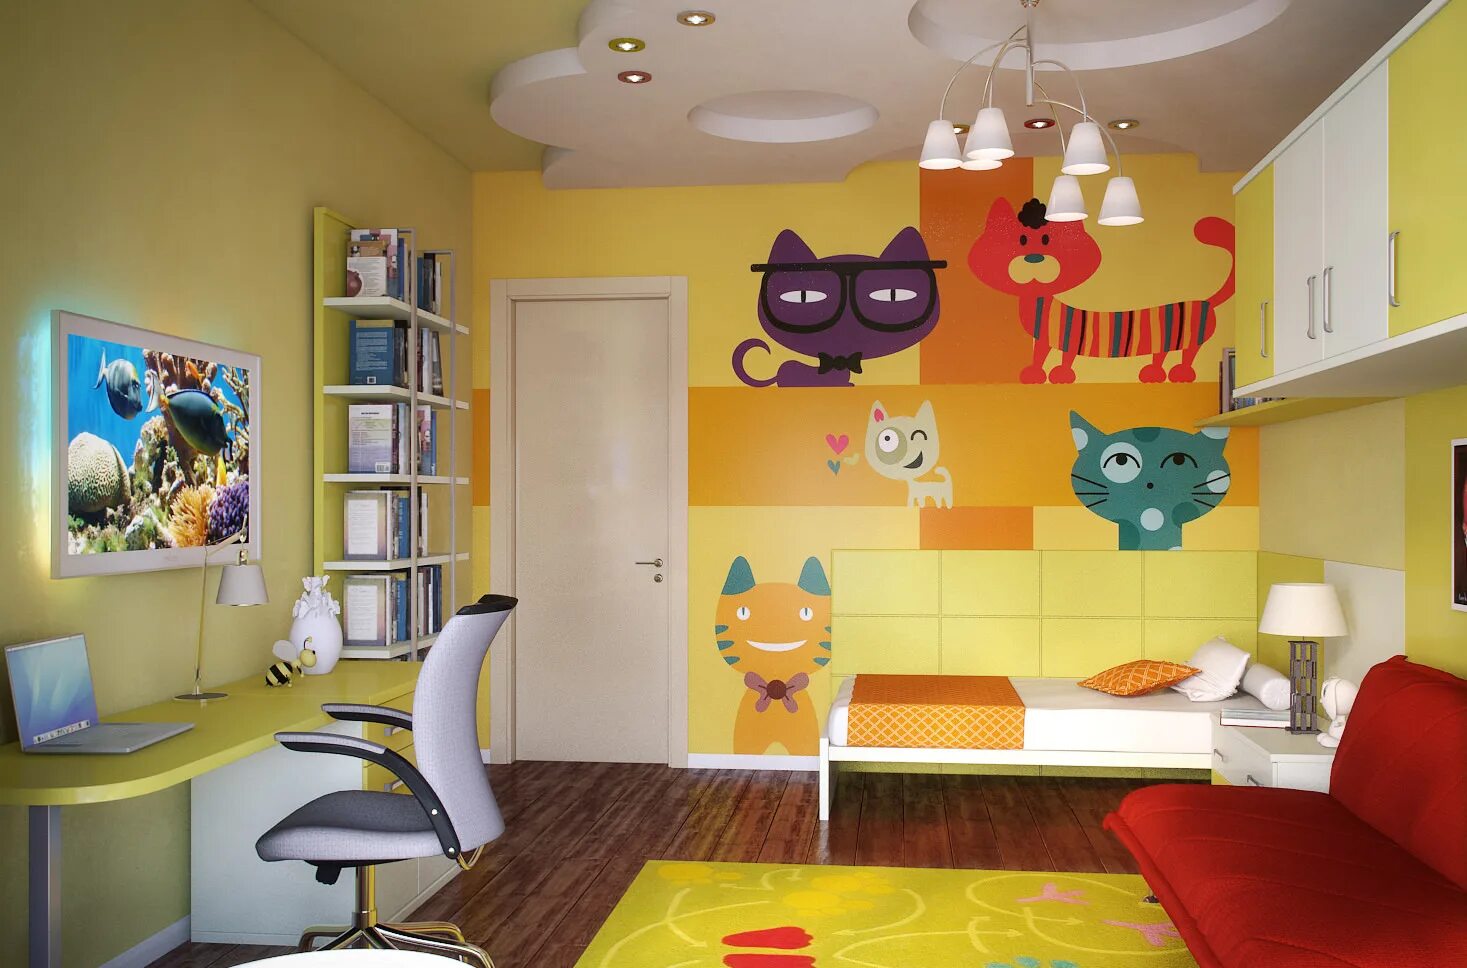 Комнату угадай. Интерьер детской. Дизайнерские детские комнаты. Оформление детской комнаты. Дети в интерьере.